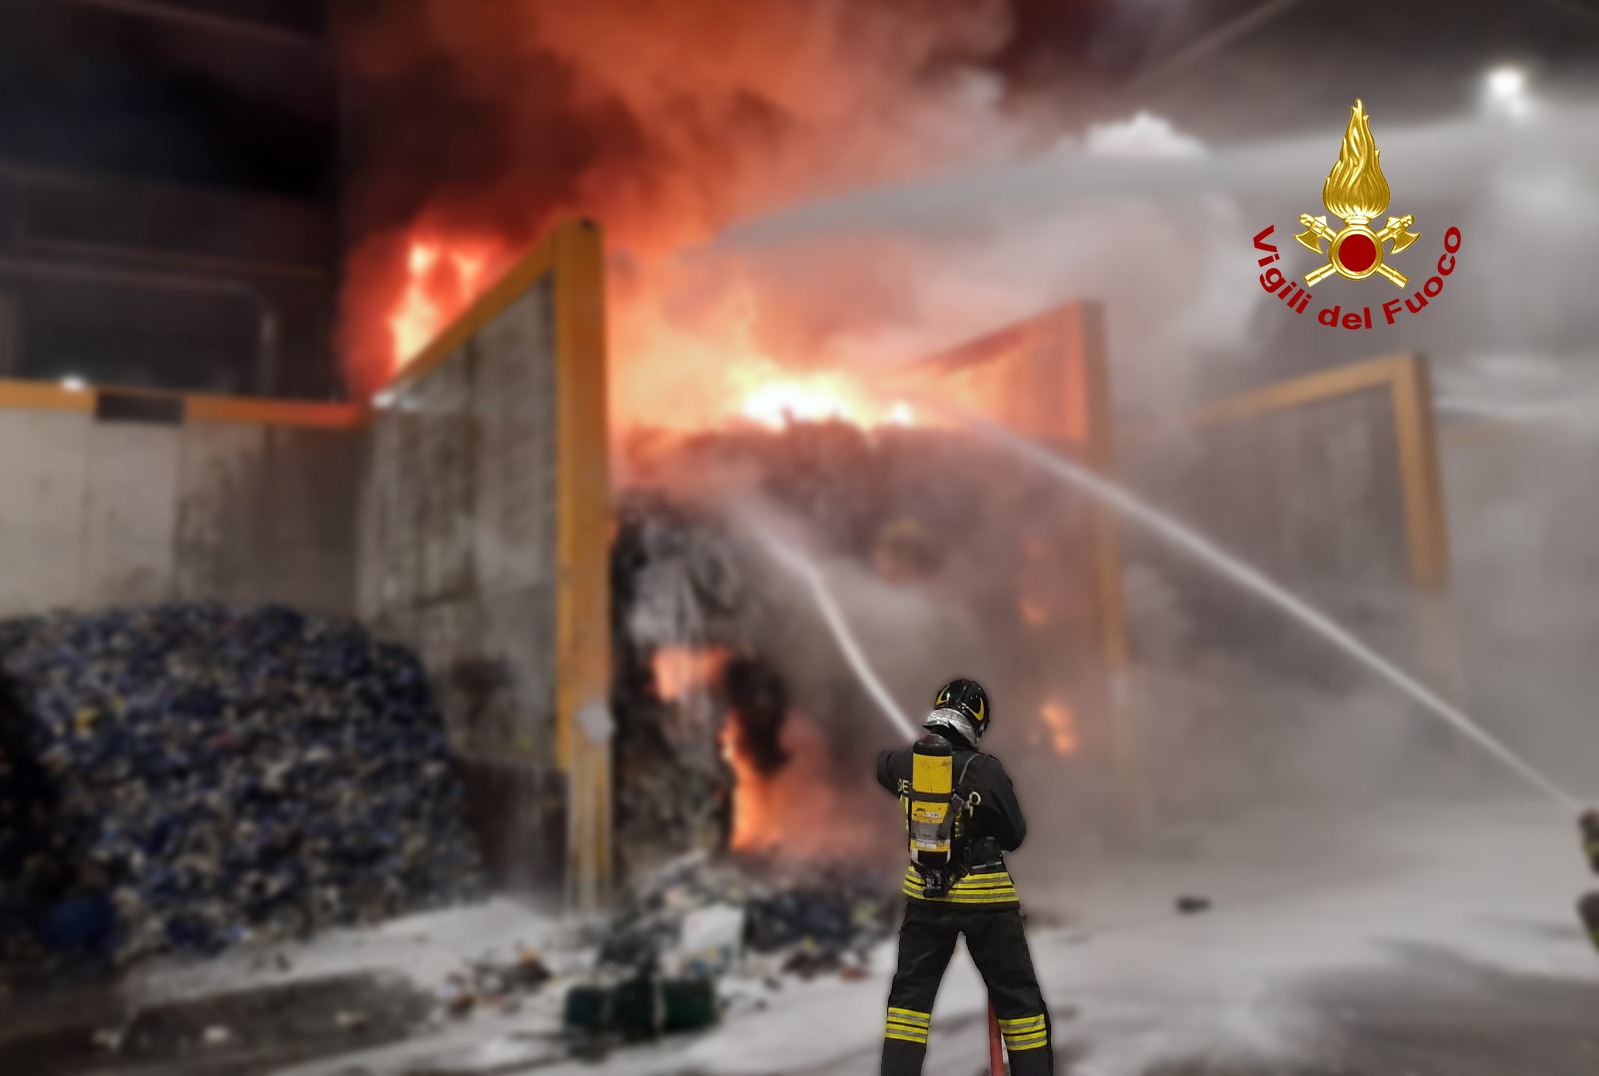 Pasqua di fuoco a Motta di Livenza, vasto incendio in un deposito rifiuti